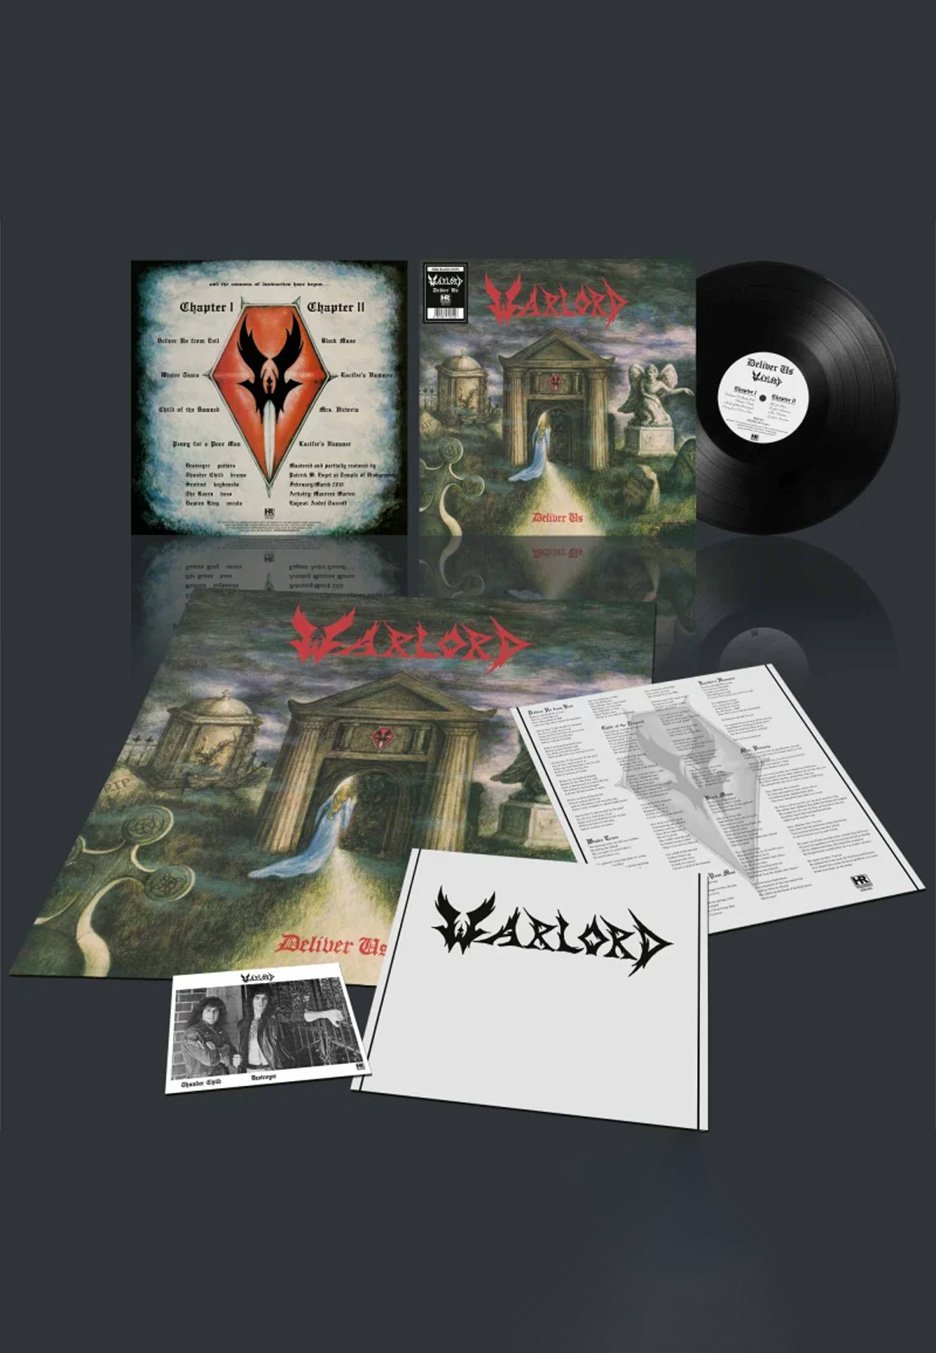 Warlord - Deliver Us - Vinyl